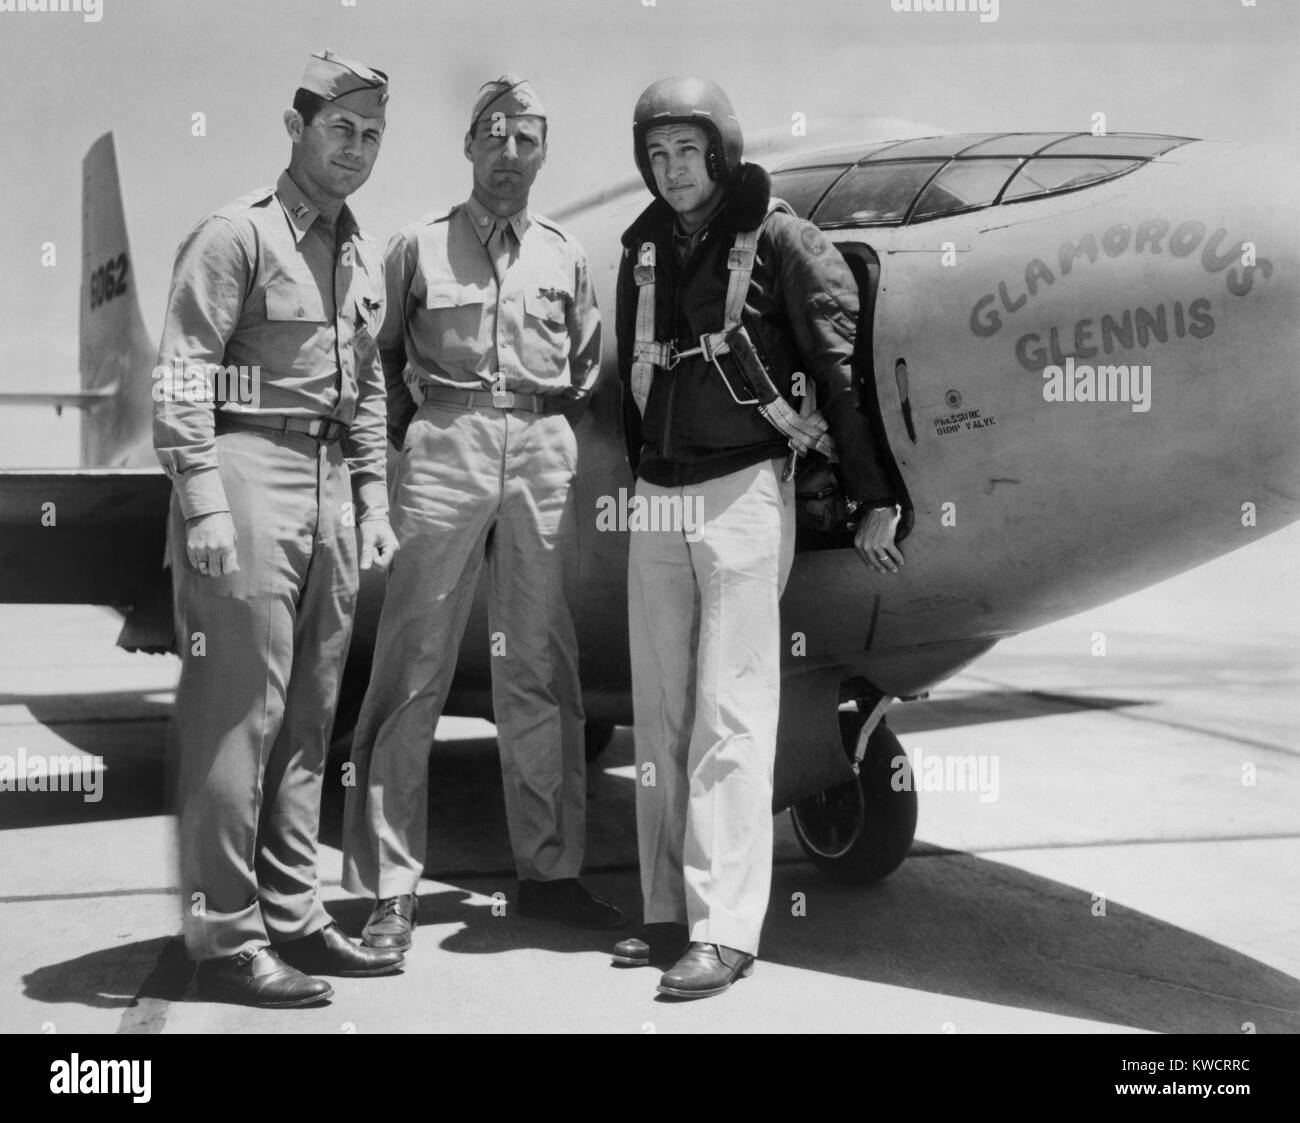 Testpiloten Kapitän Charles E. Yeager, Major Gus Lundquist, und Kapitän James Fitzgerald. Sie flogen die supersonic Bell XS-1 Rakete Fläche namens "Glamorous Glennis'. Edwards Air Force Base. 1947-48. - (BSLOC_2015_1_37) Stockfoto